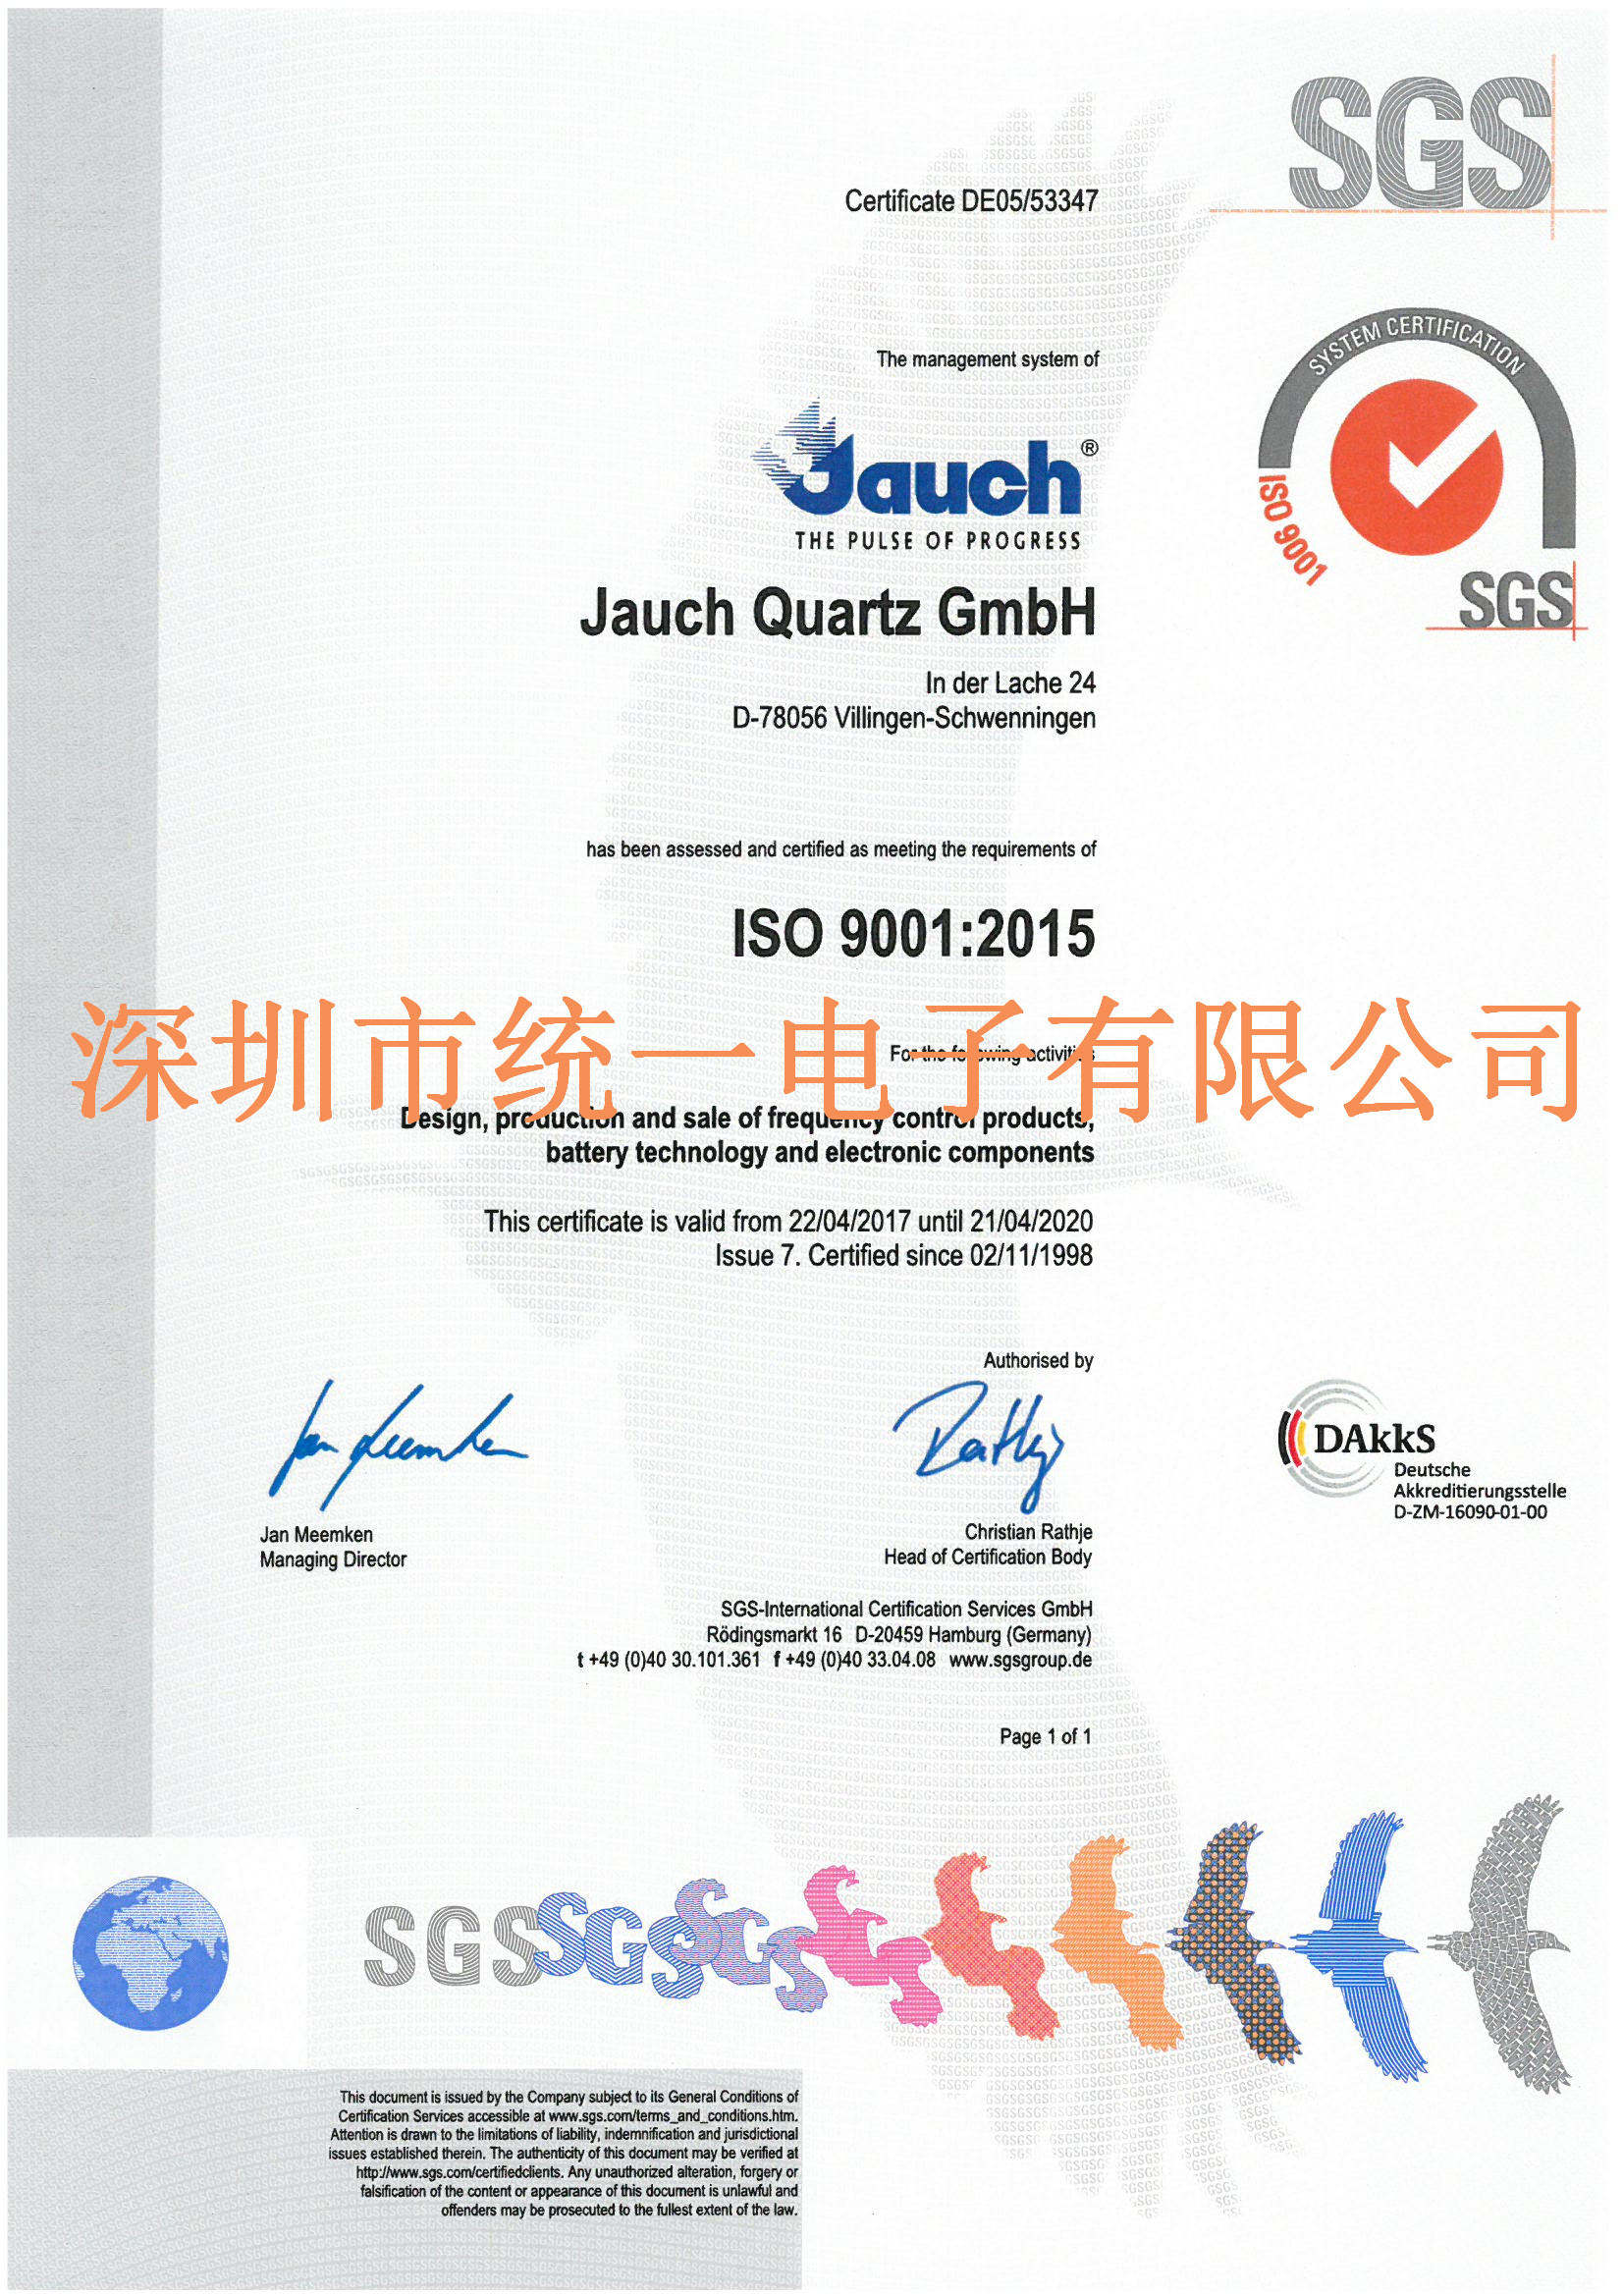 Jauch晶振产品均已通过了ISO9001认证